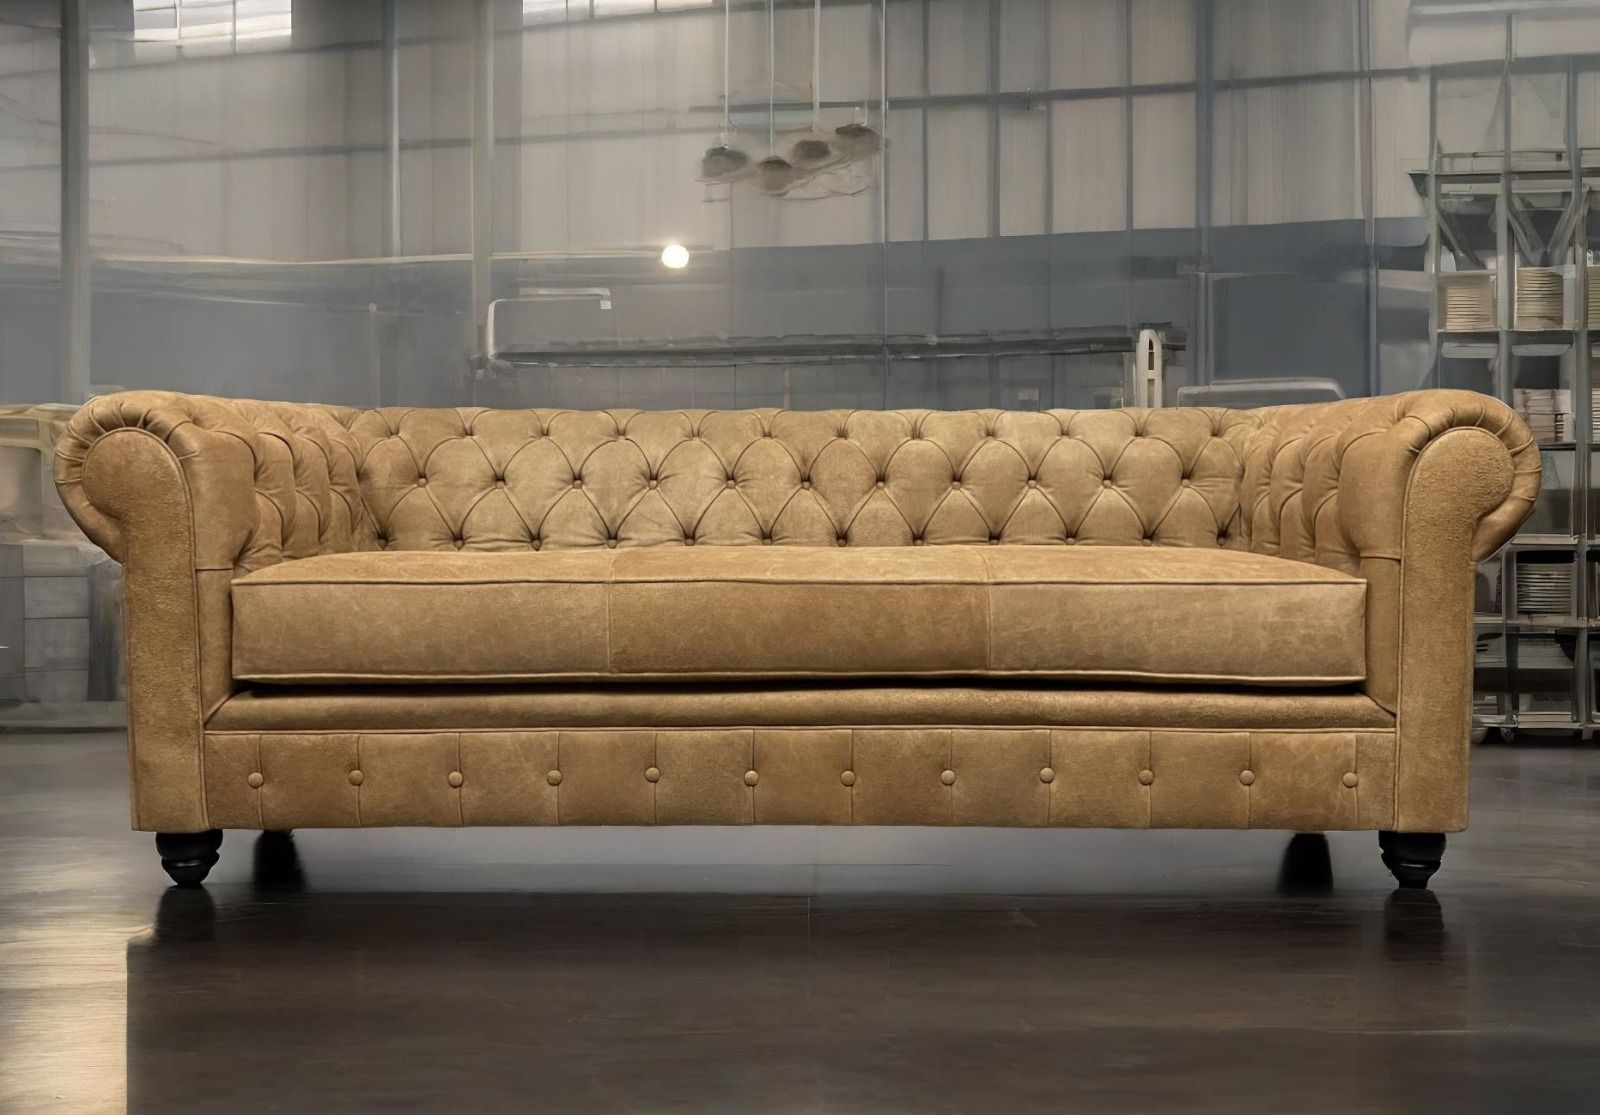 Sofa de Cuero – Chesterfield Color Distroi Oak, 240 cm de frente, Cojín único asiento, tres costuras, Respaldo Recto Clásico, Cuero 100% Natural Uruguayo 22